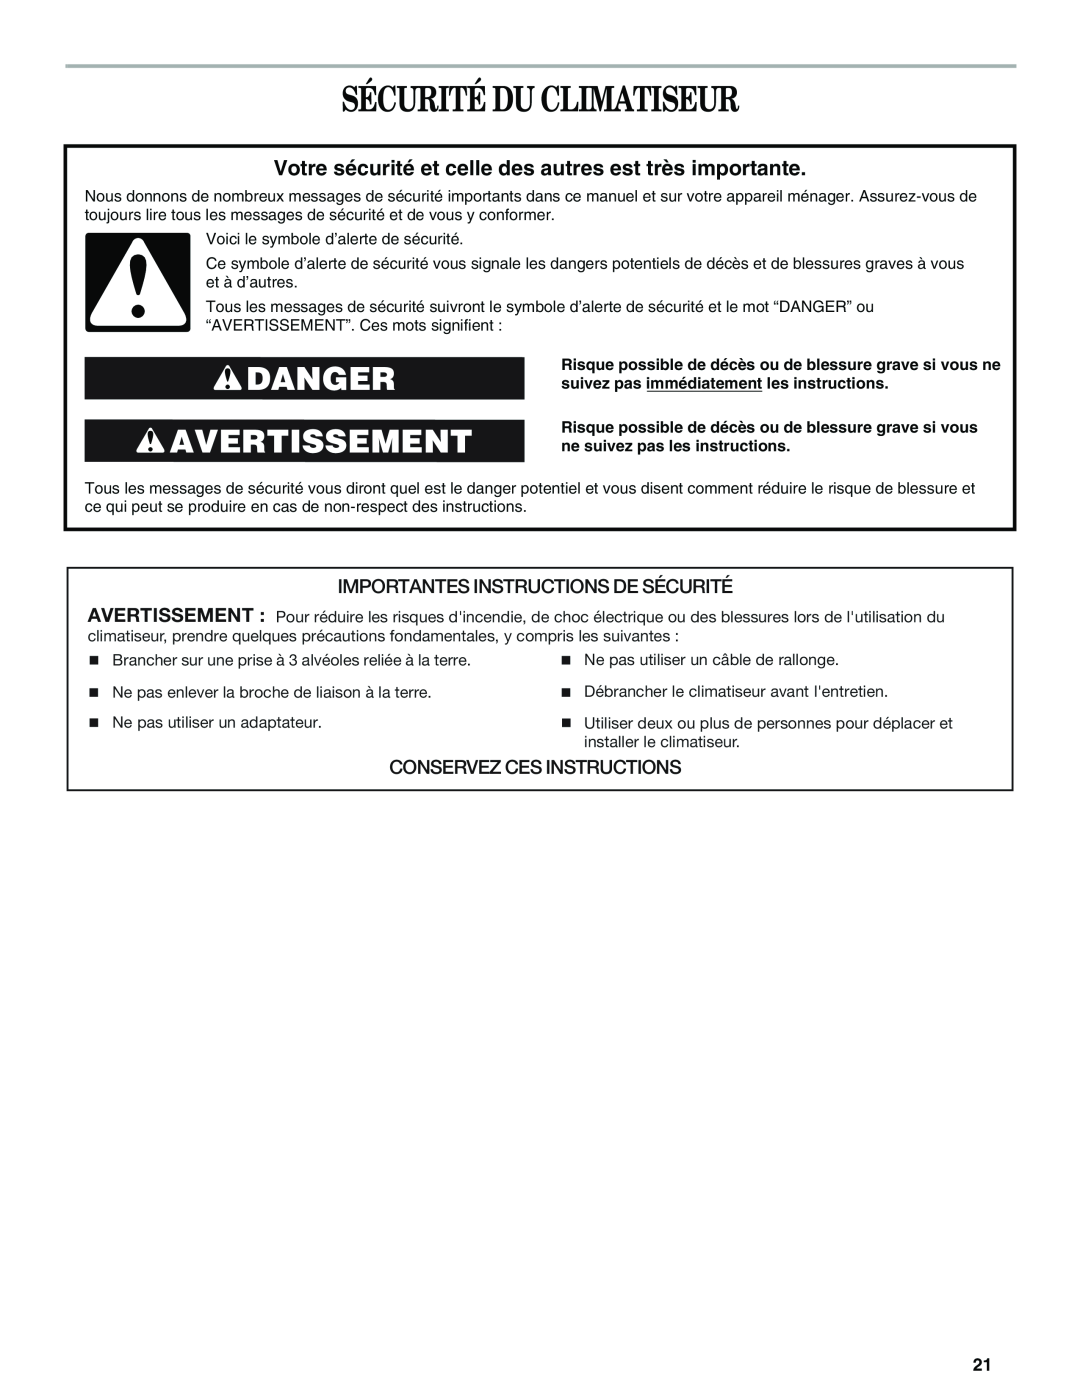 Haier CWH18A, CWH12A, CWH24A manual Sécurité Du Climatiseur, Danger Avertissement, Importantes Instructions De Sécurité 